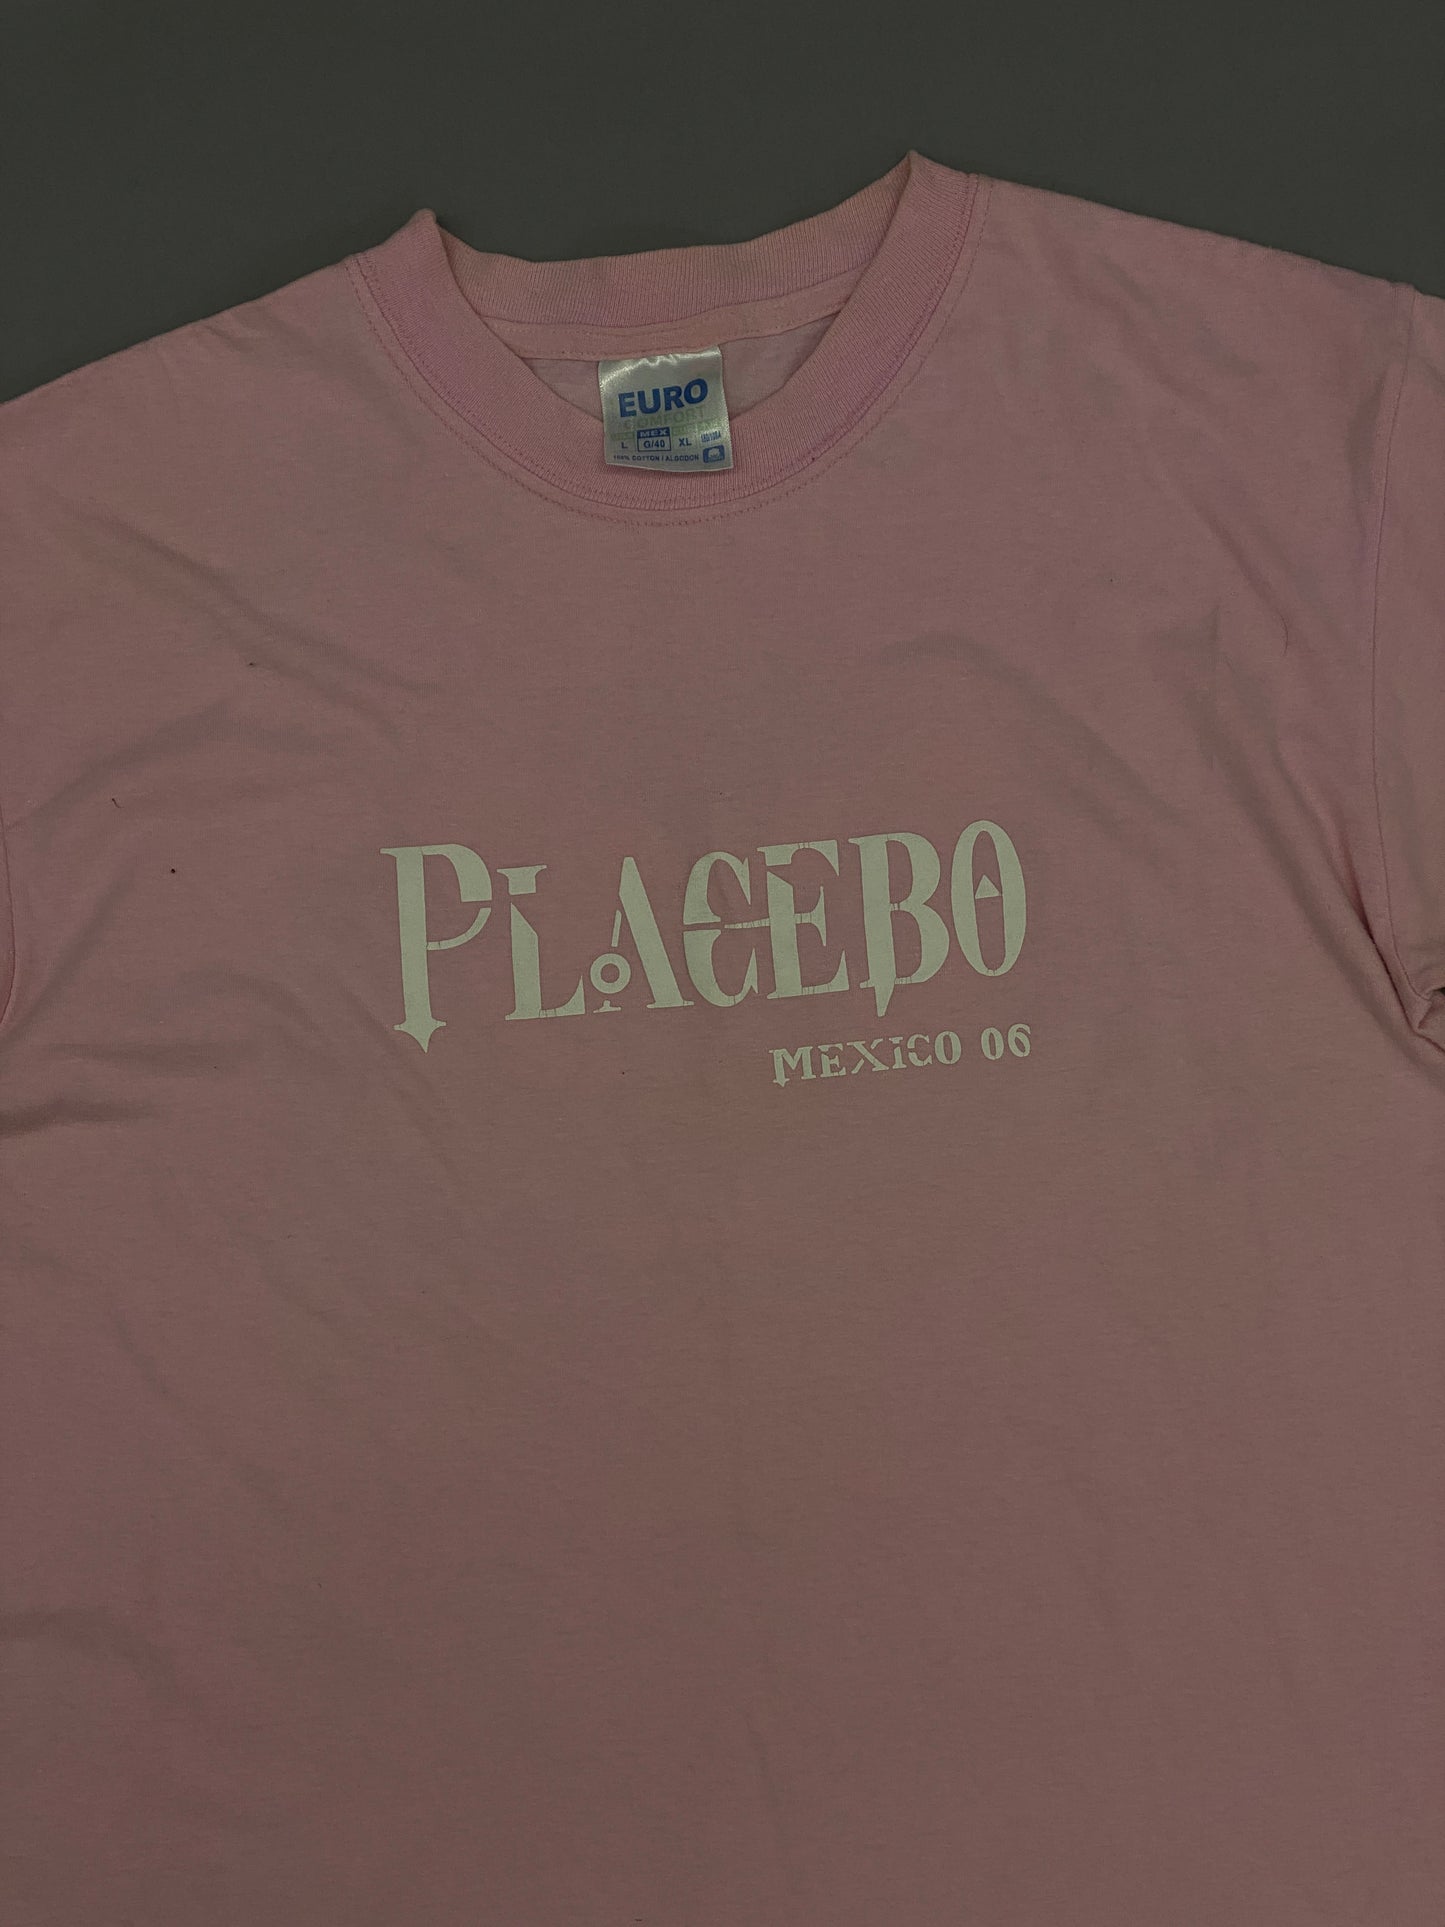 Playera Placebo Mexico Tour 2006 Vintage